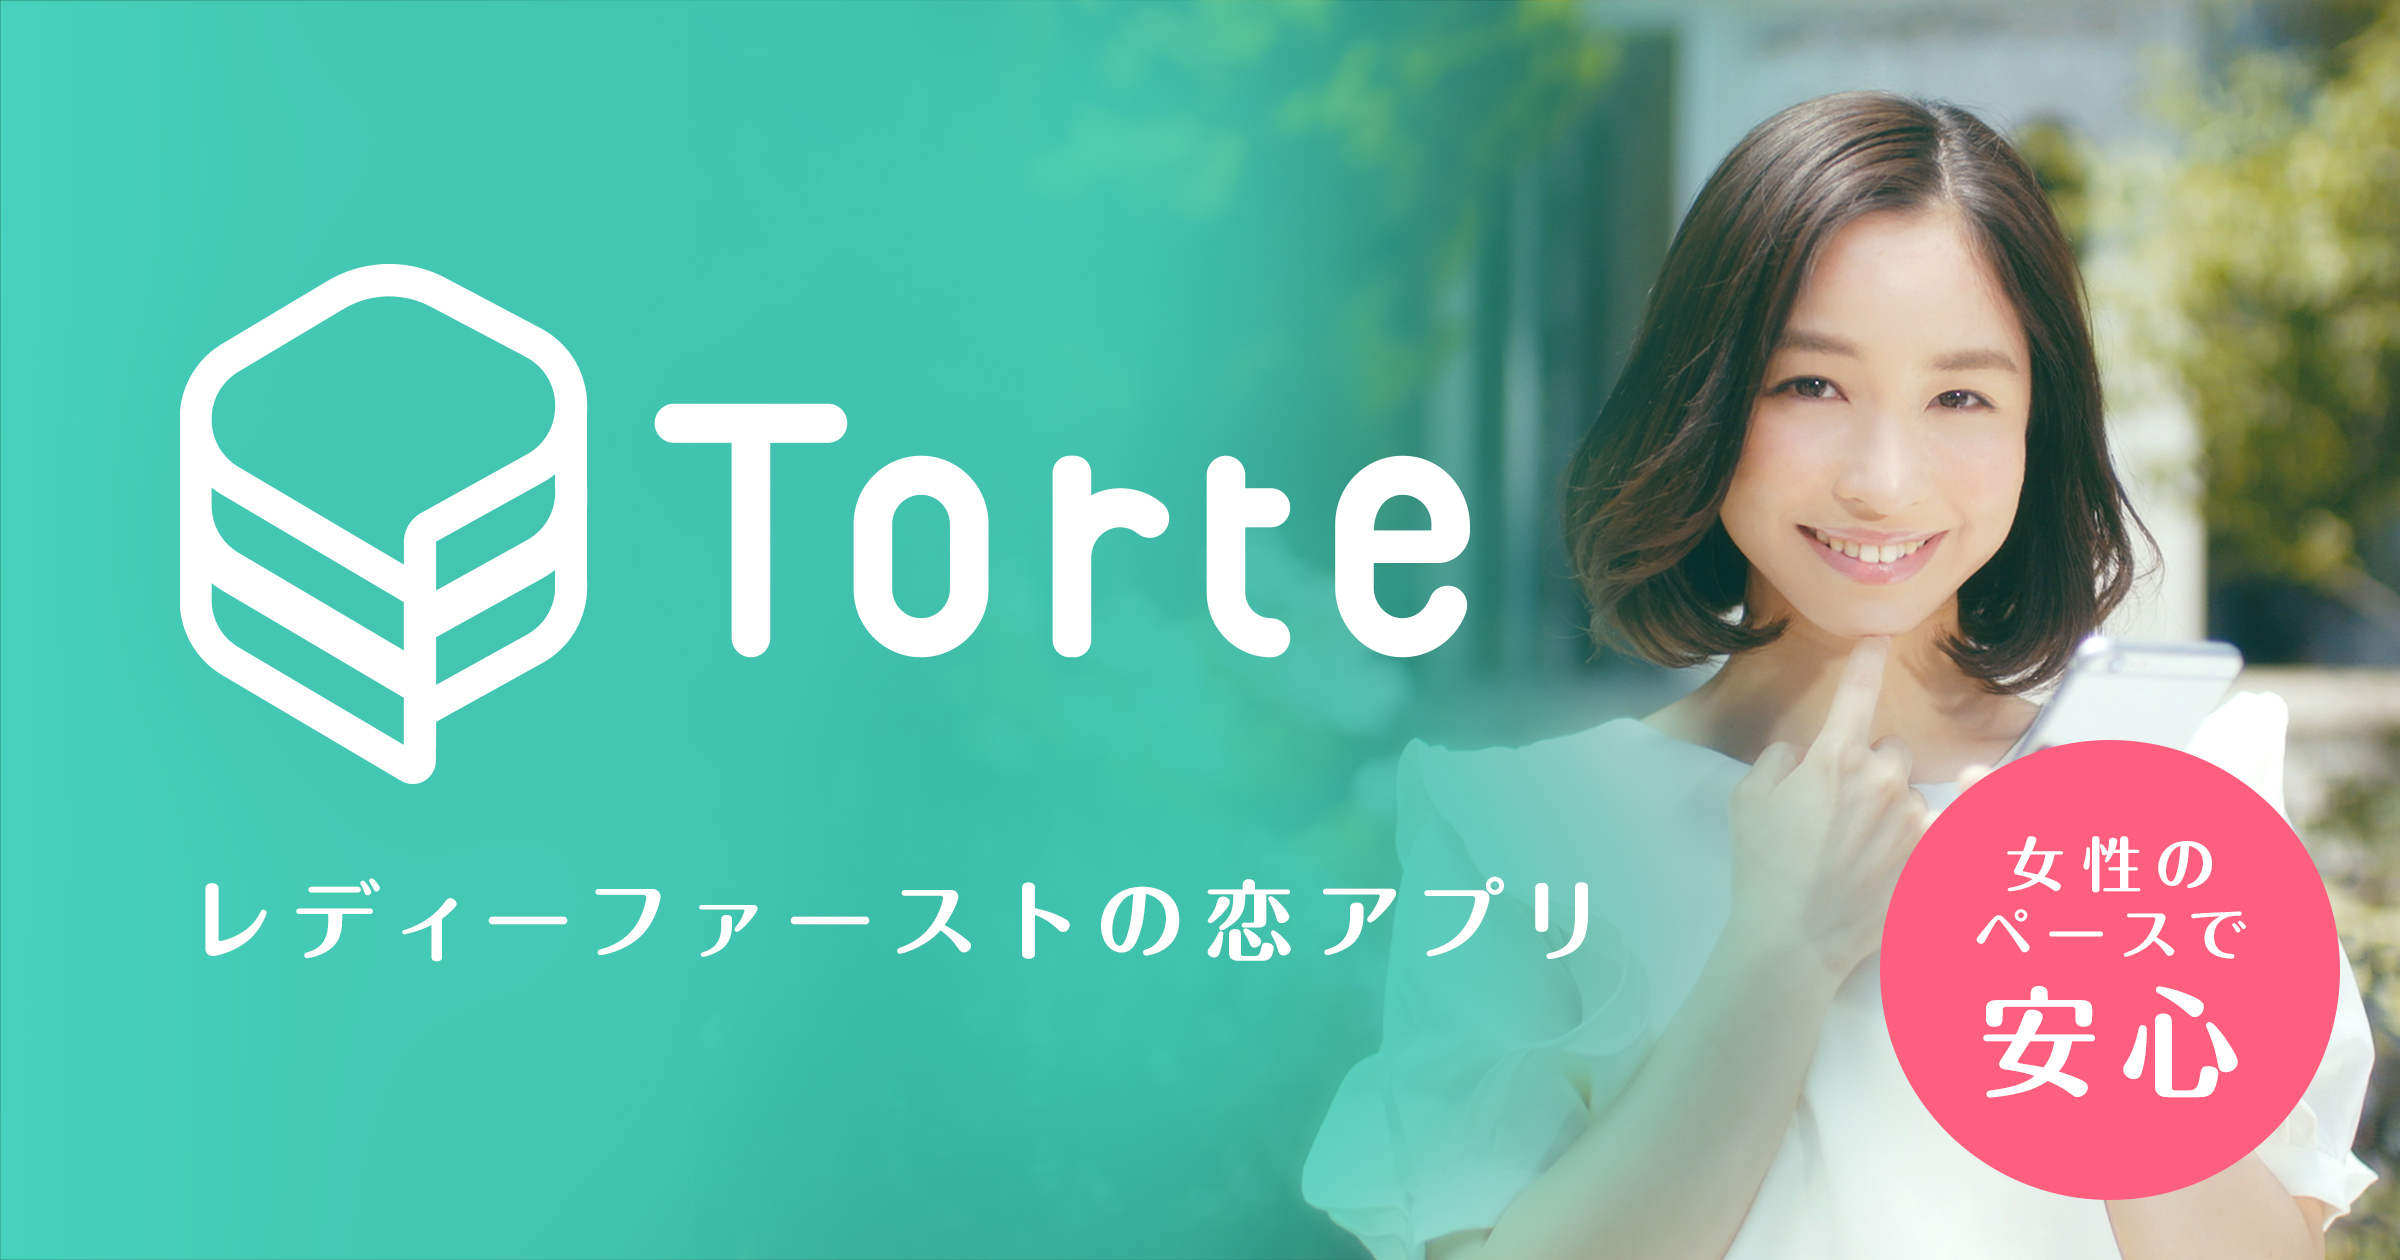 Torte トルテ レディーファーストな恋をしよう 恋活 婚活アプリ オフィシャルインフォ